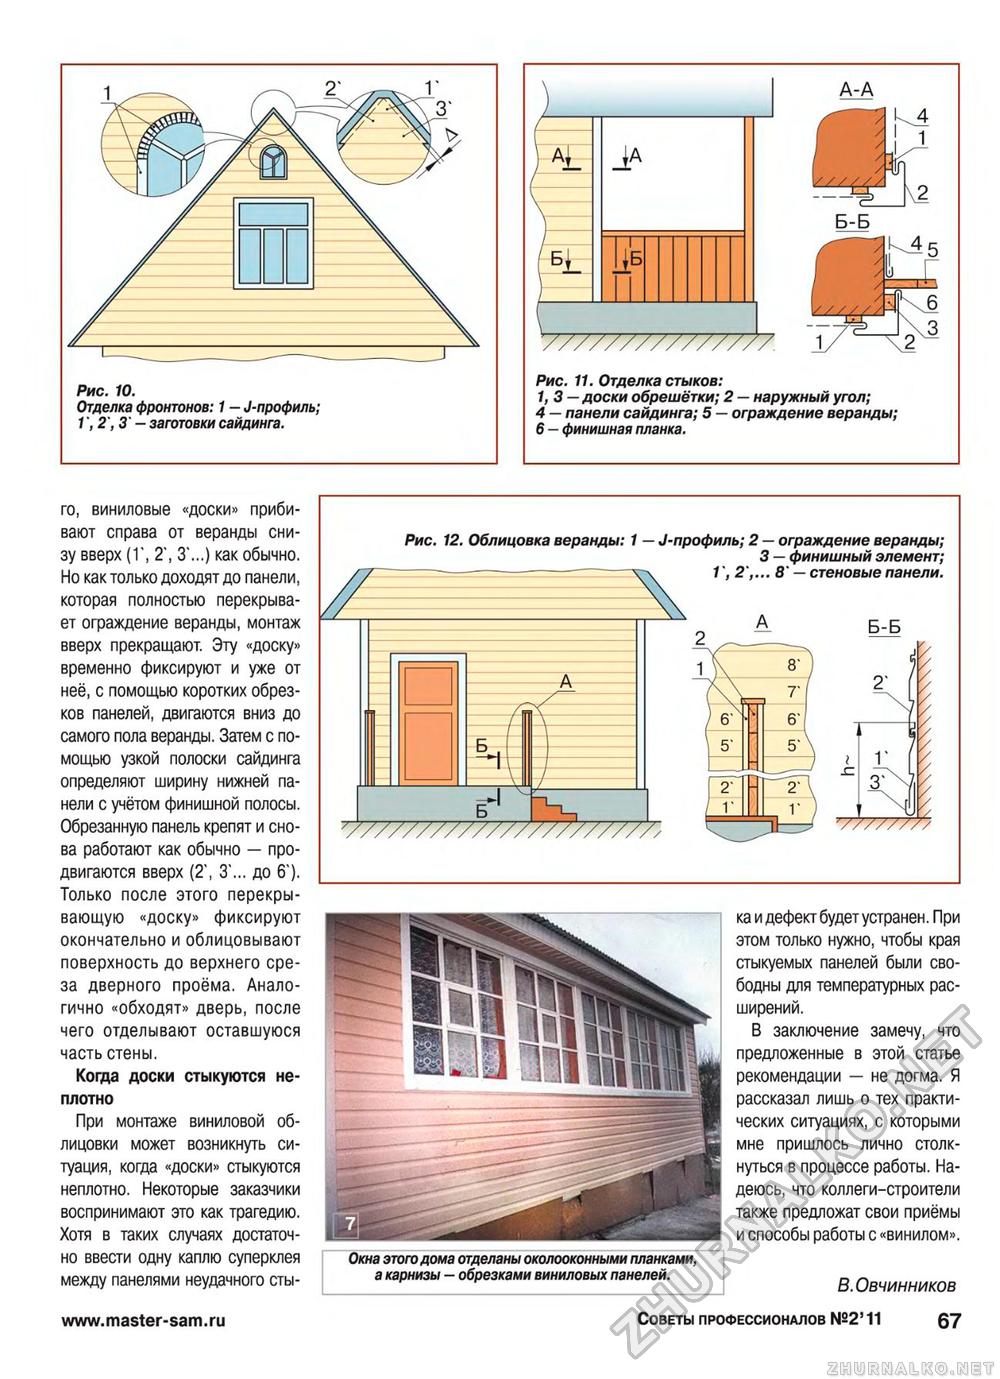 Советы профессионалов 2011-02, страница 67